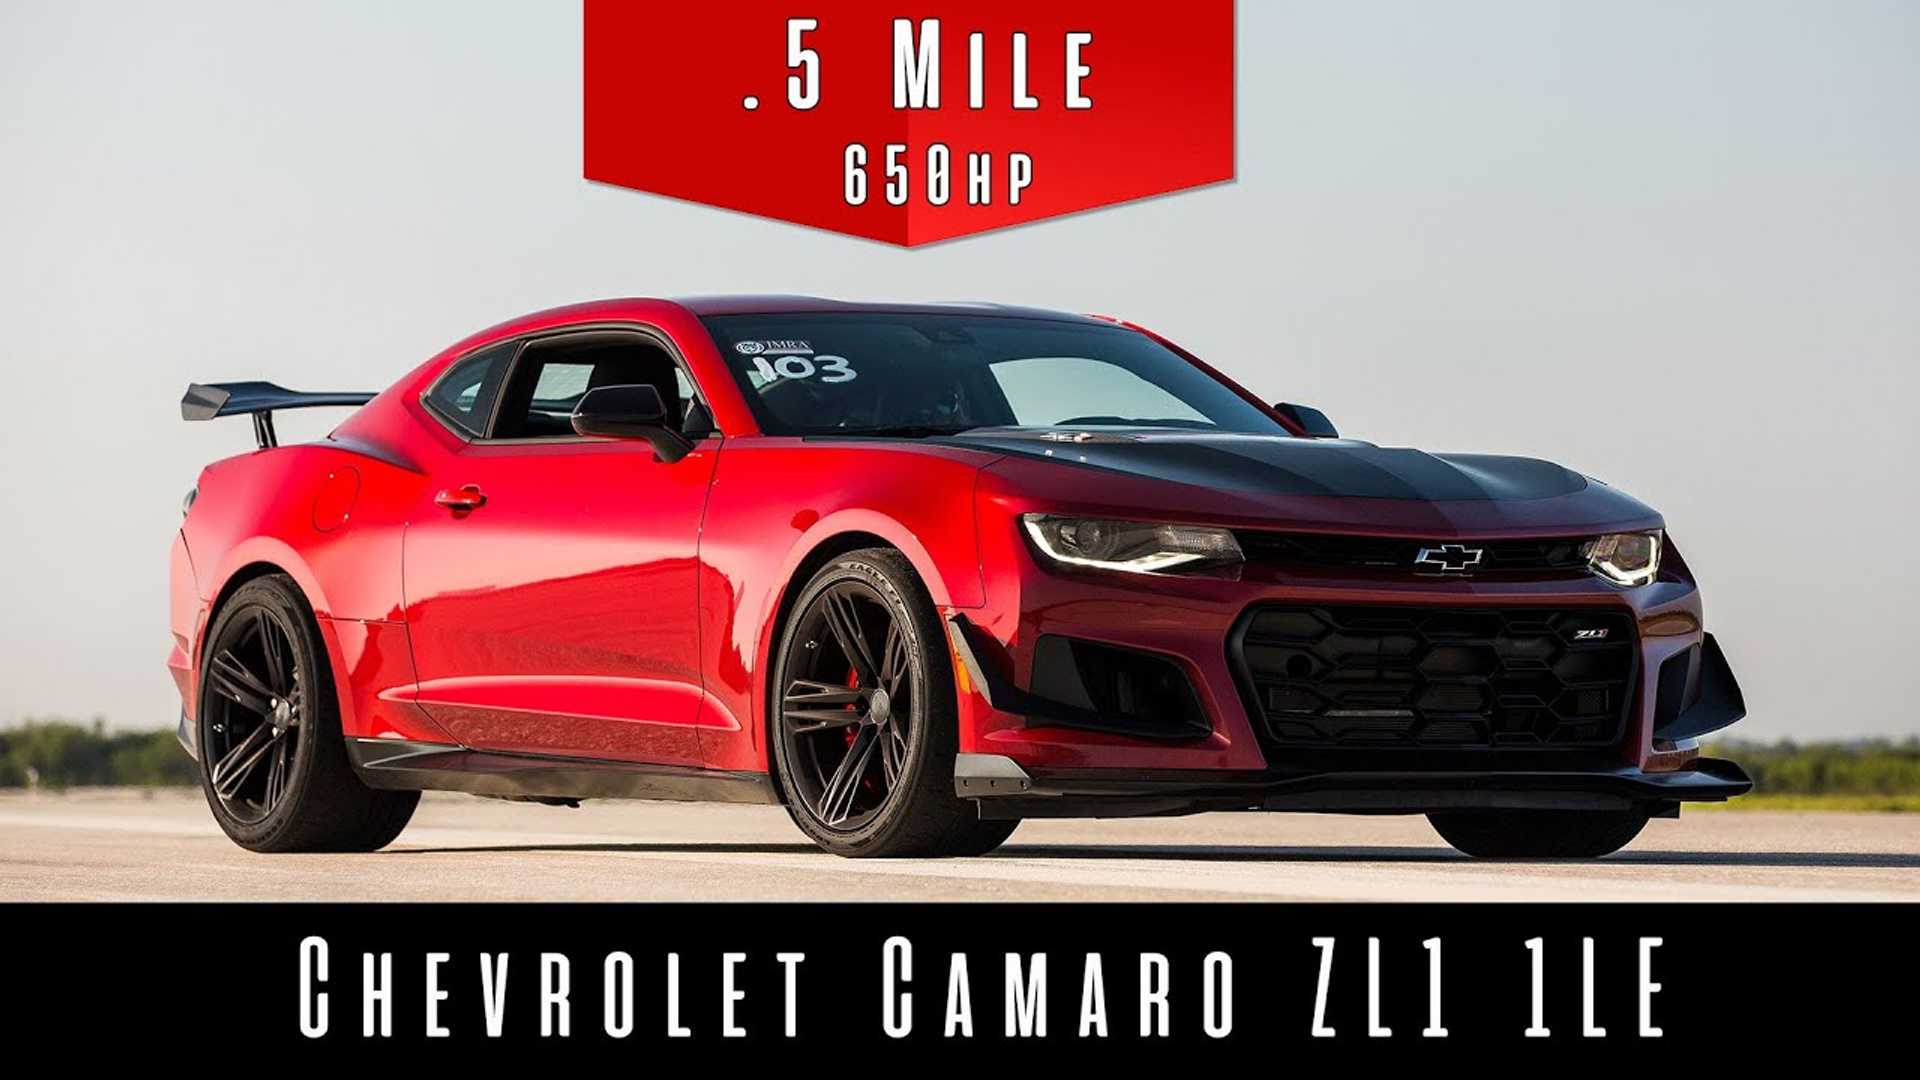 Así hace la media milla el Chevrolet Camaro ZL1 1LE con el acelerador a  fondo -